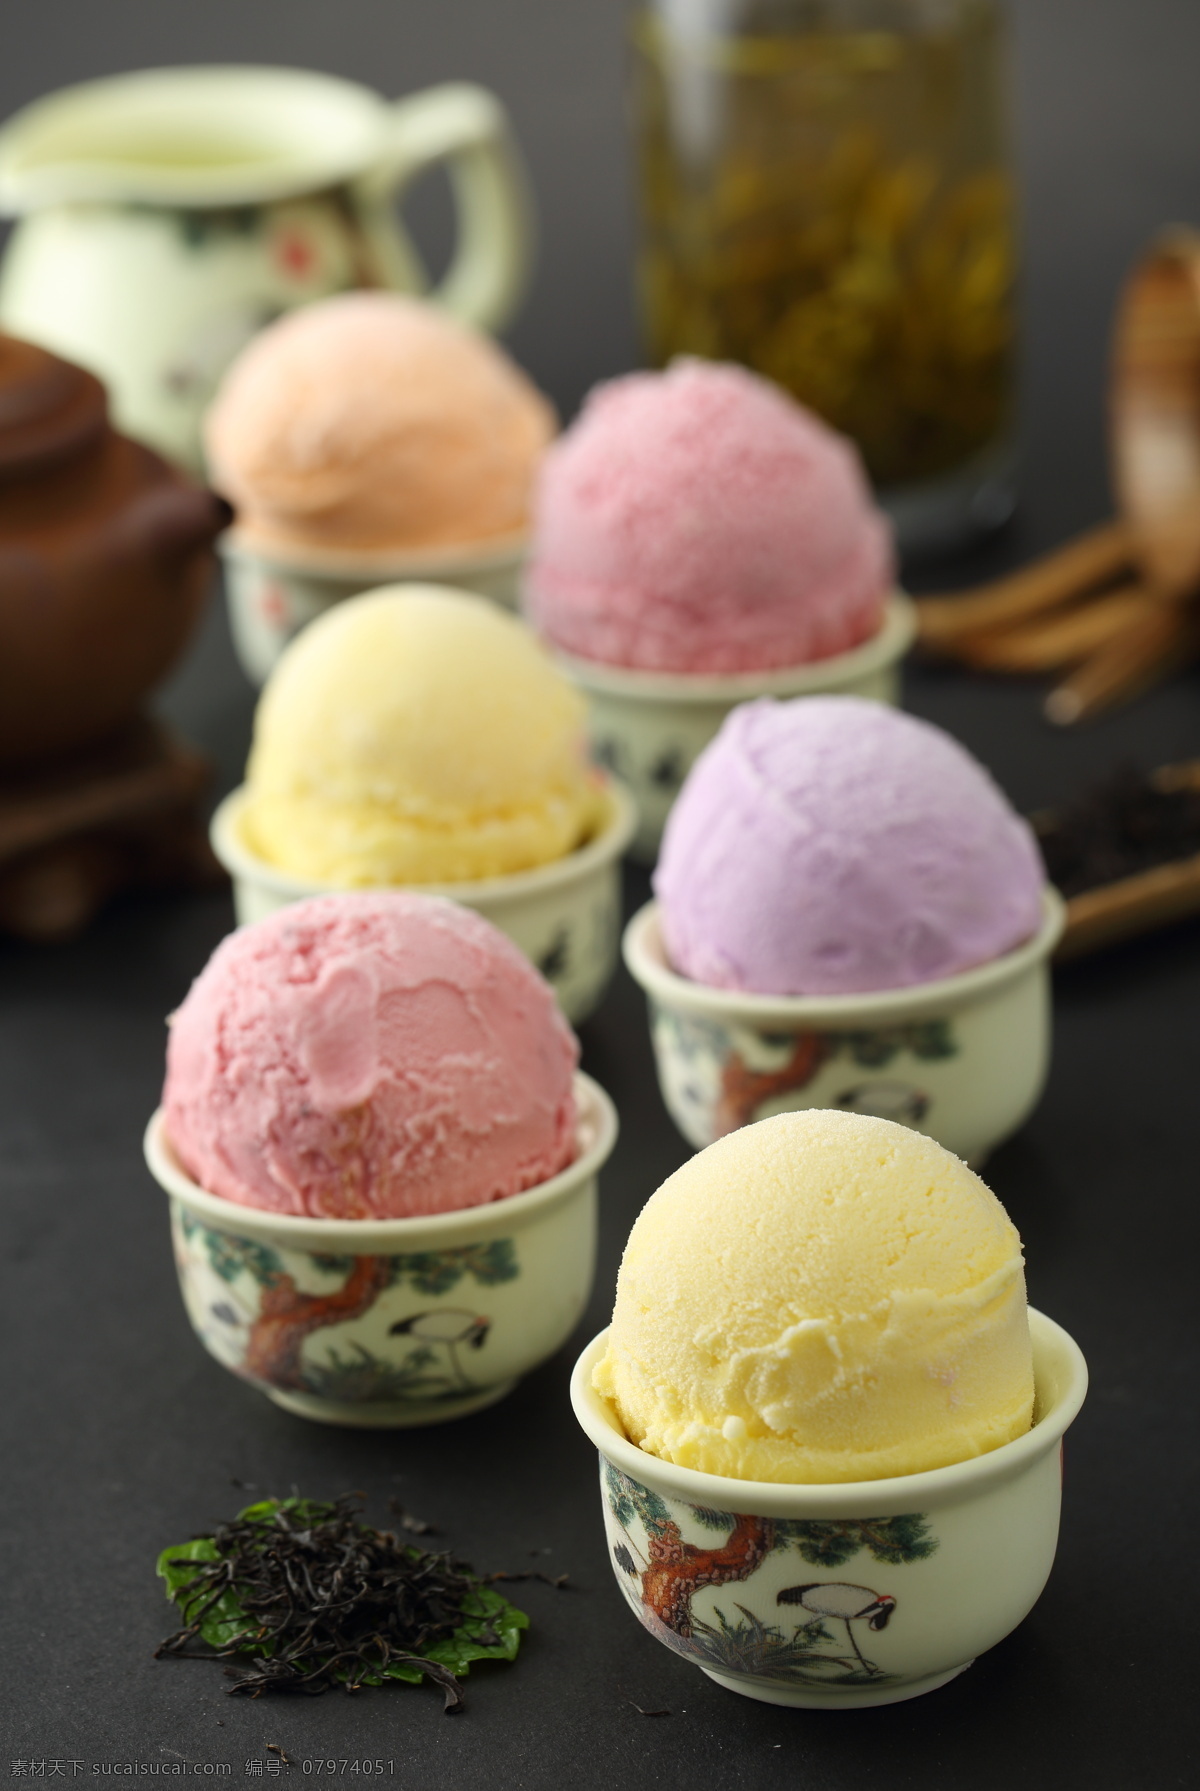 可爱 雪 冰淇淋 冰淇淋海报 冰淇淋广告 冰淇淋图片 冰淇淋彩图 冰淇淋高清图 彩色冰淇淋 可爱冰淇淋 餐饮美食 小吃 饮料酒水